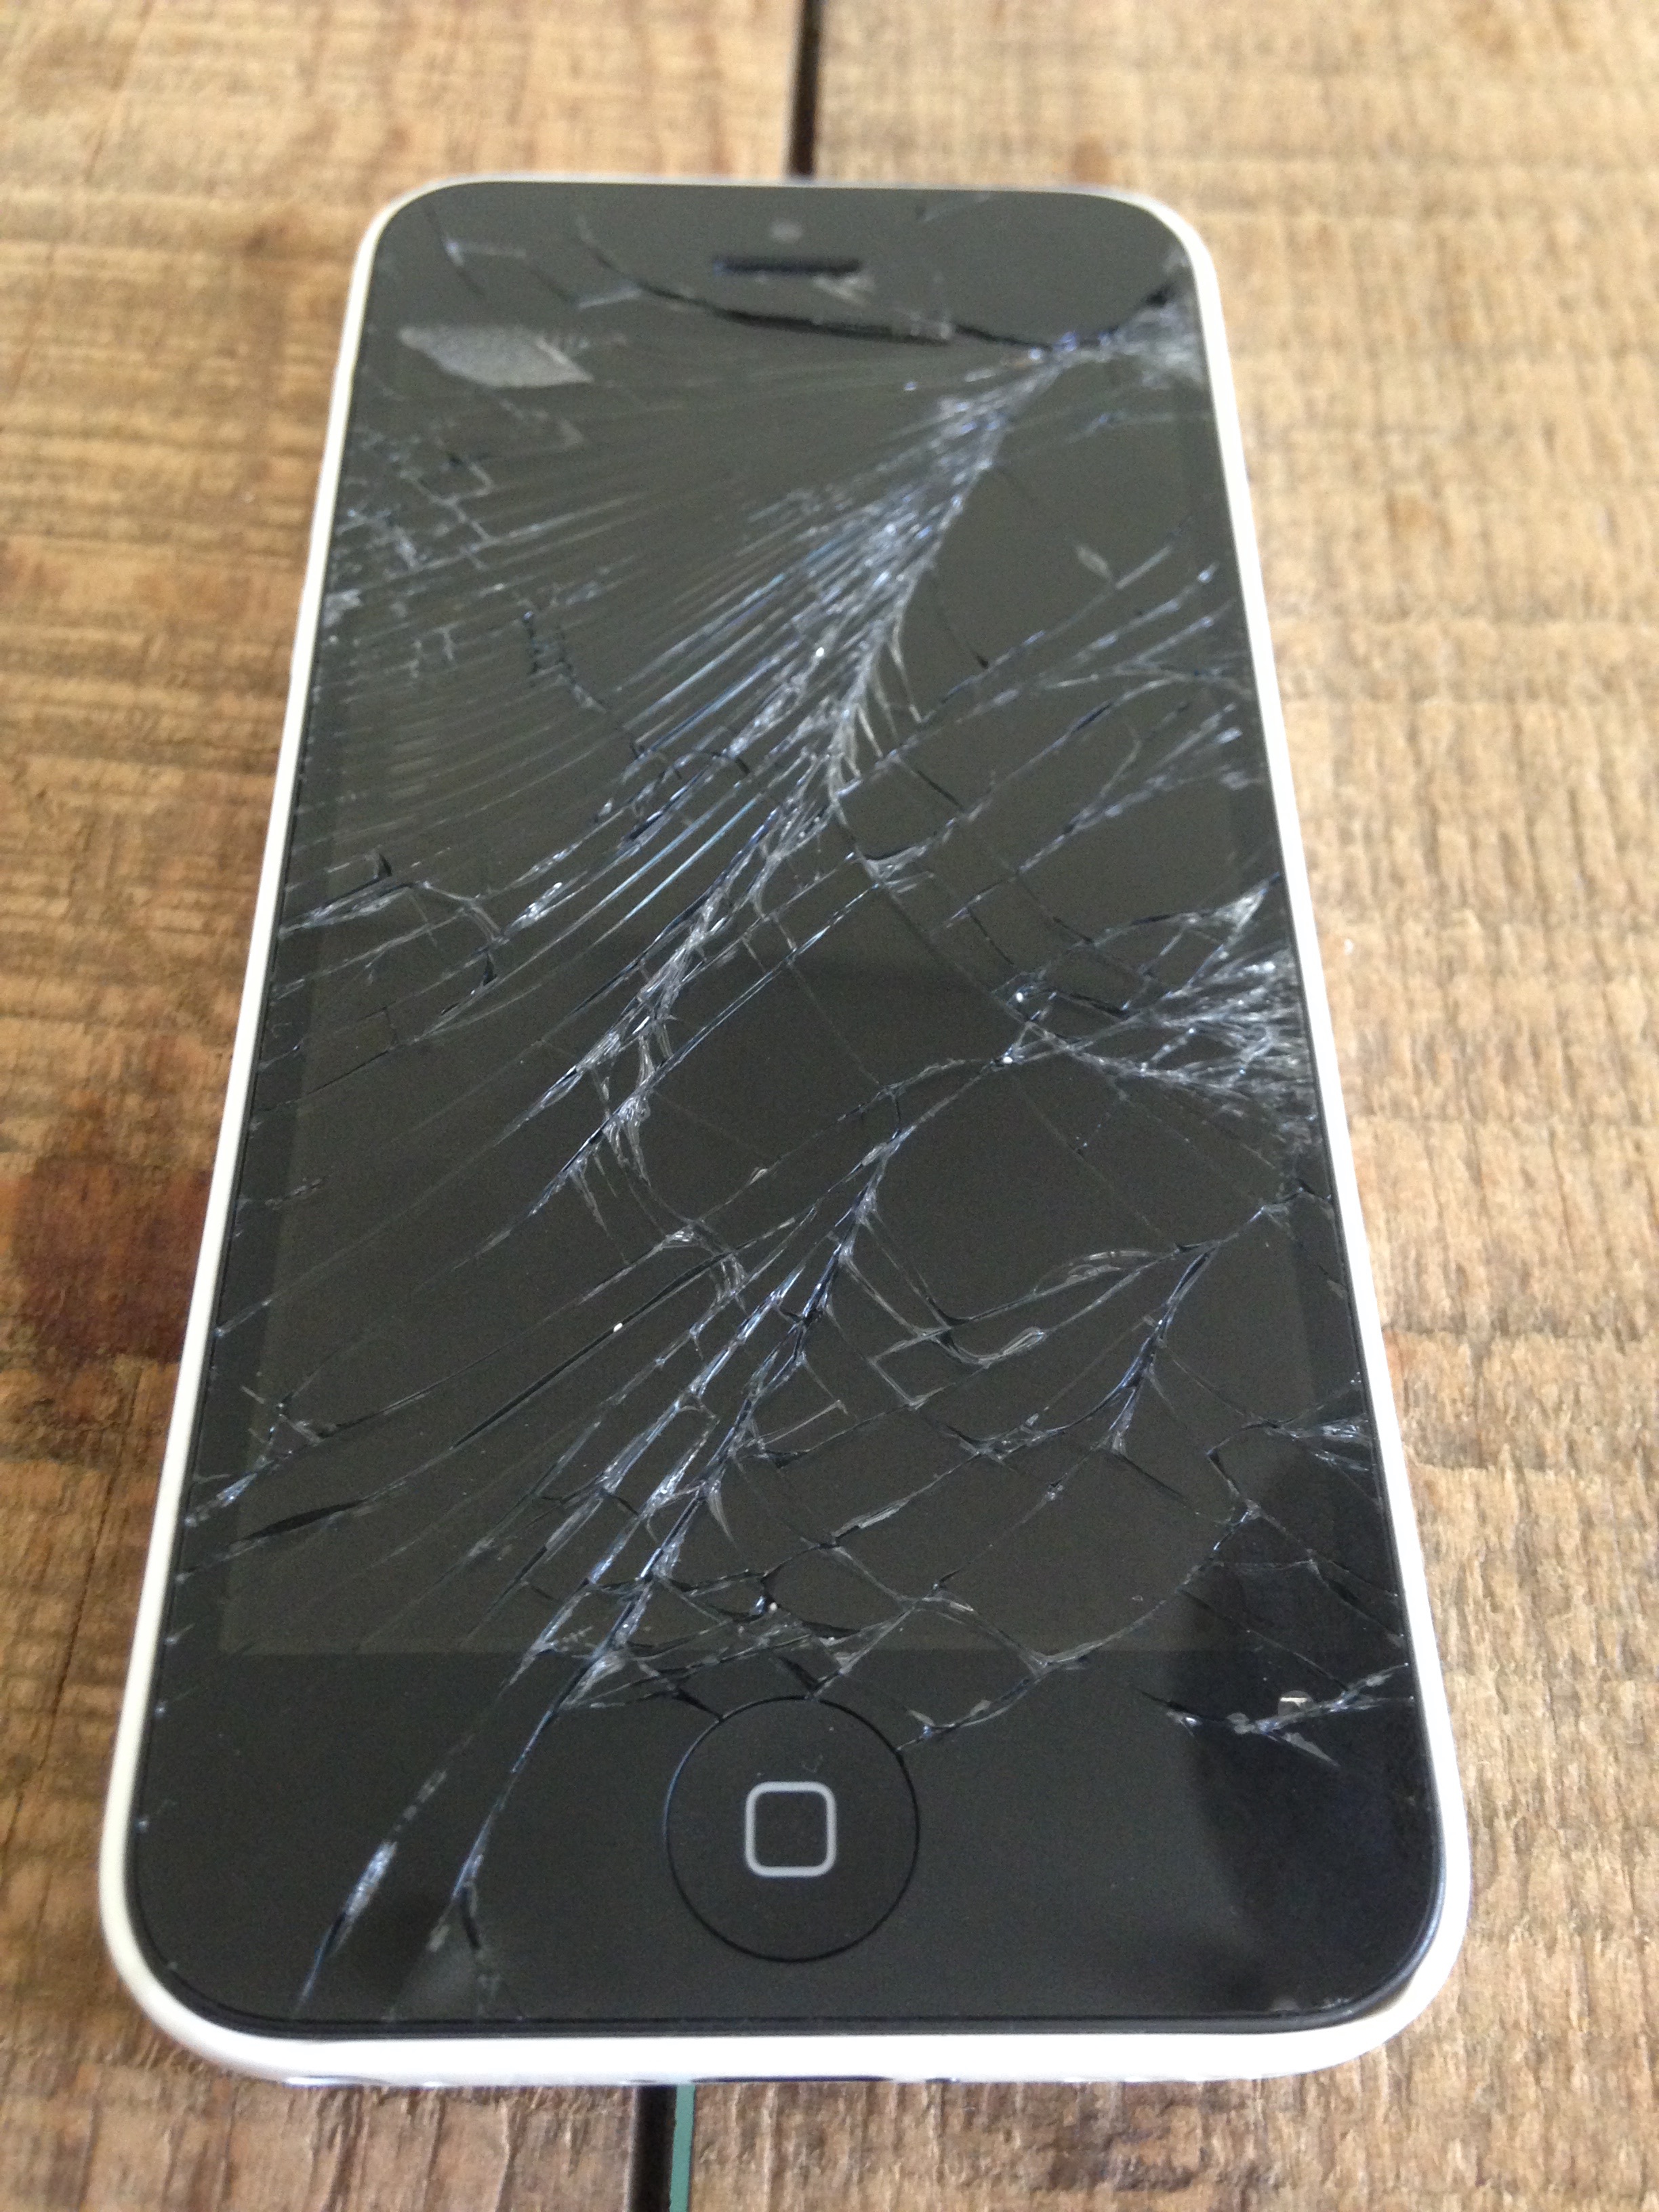 Broken iPhone Screen in Dubai? - iRepairUAE - We Come To You!